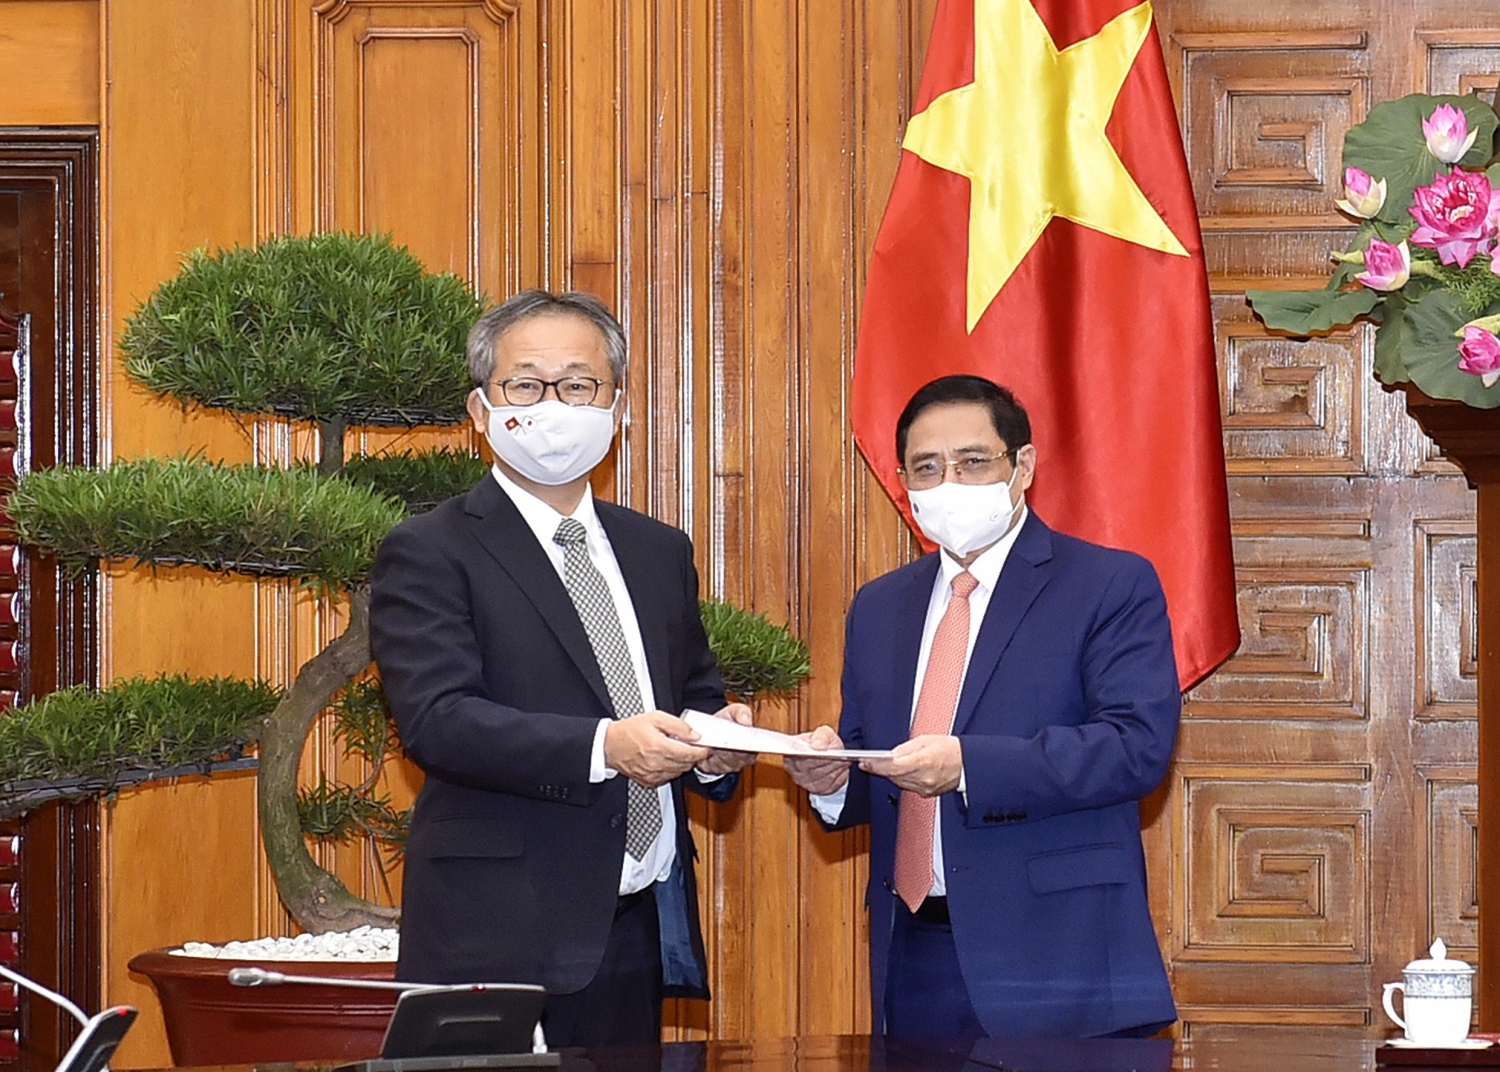 Đại sứ Nhật Bản chuyển thông điệp của Thủ tướng Nhật Bản Suga Yoshihide gửi Thủ tướng Chính phủ Phạm Minh Chính về việc Chính phủ Nhật Bản quyết định hỗ trợ Việt Nam 1 triệu liều vaccine để phòng chống COVID-19. - Ảnh: VGP/Nhật Bắc